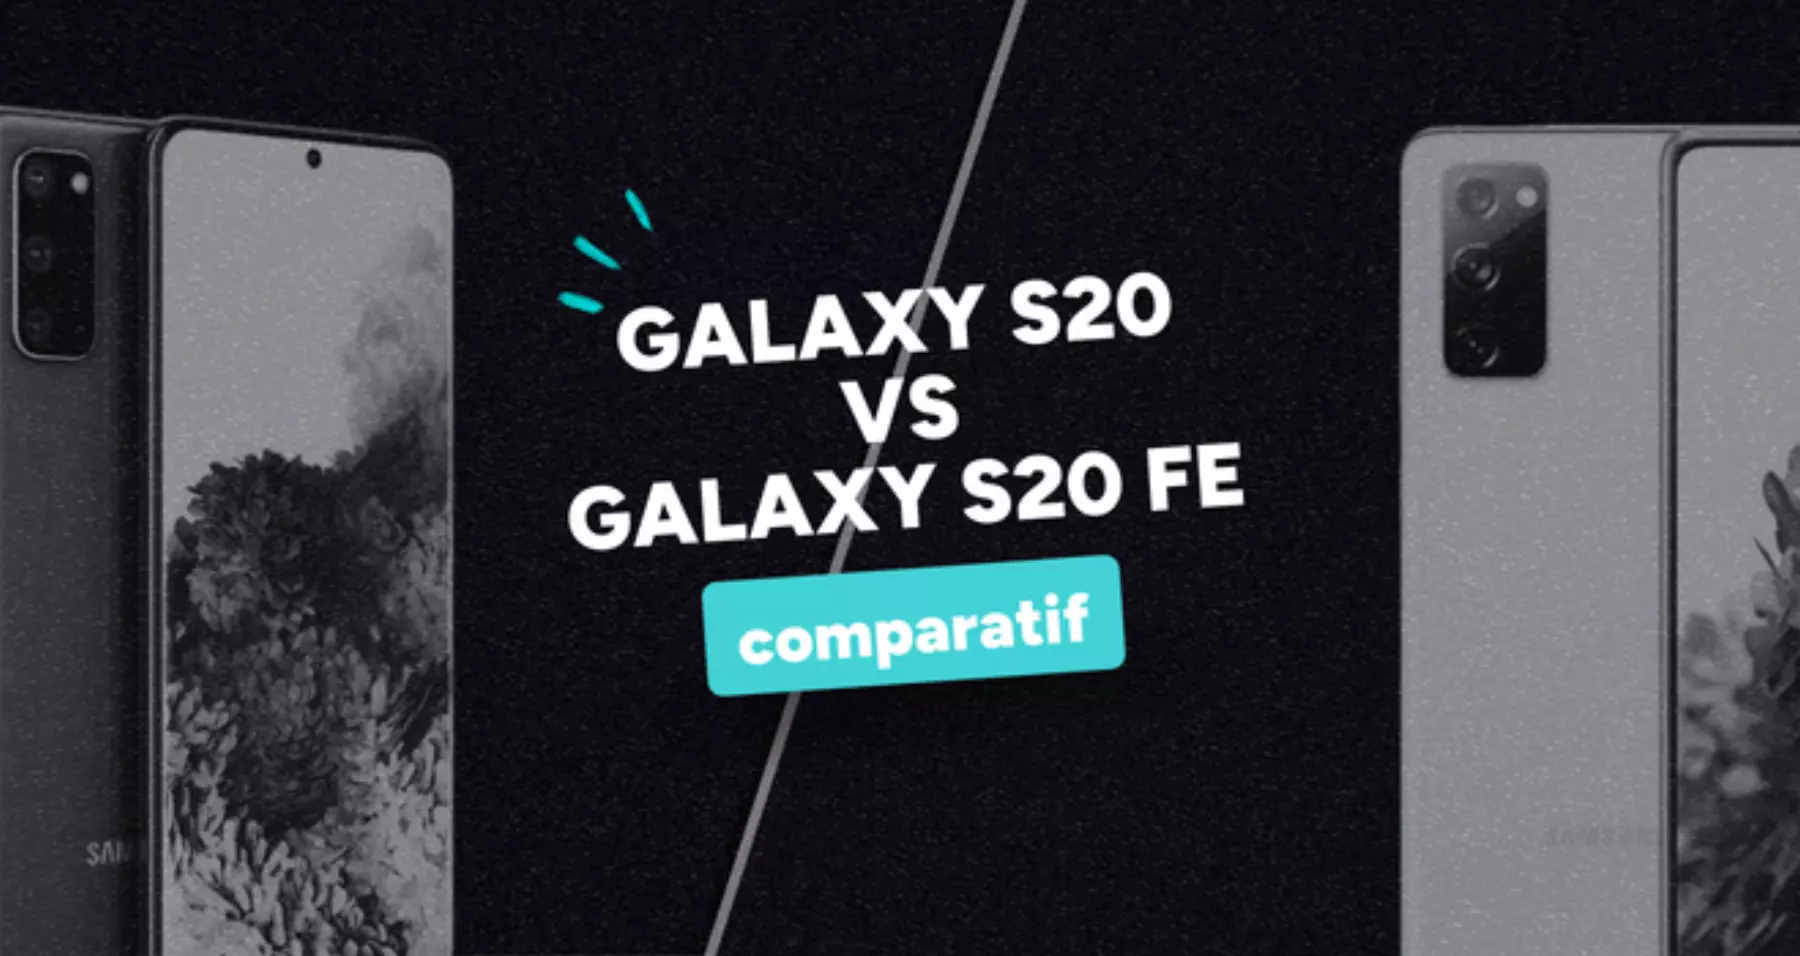 Samsung Galaxy S20 FE : Un prix jamais vu pour un smartphone très